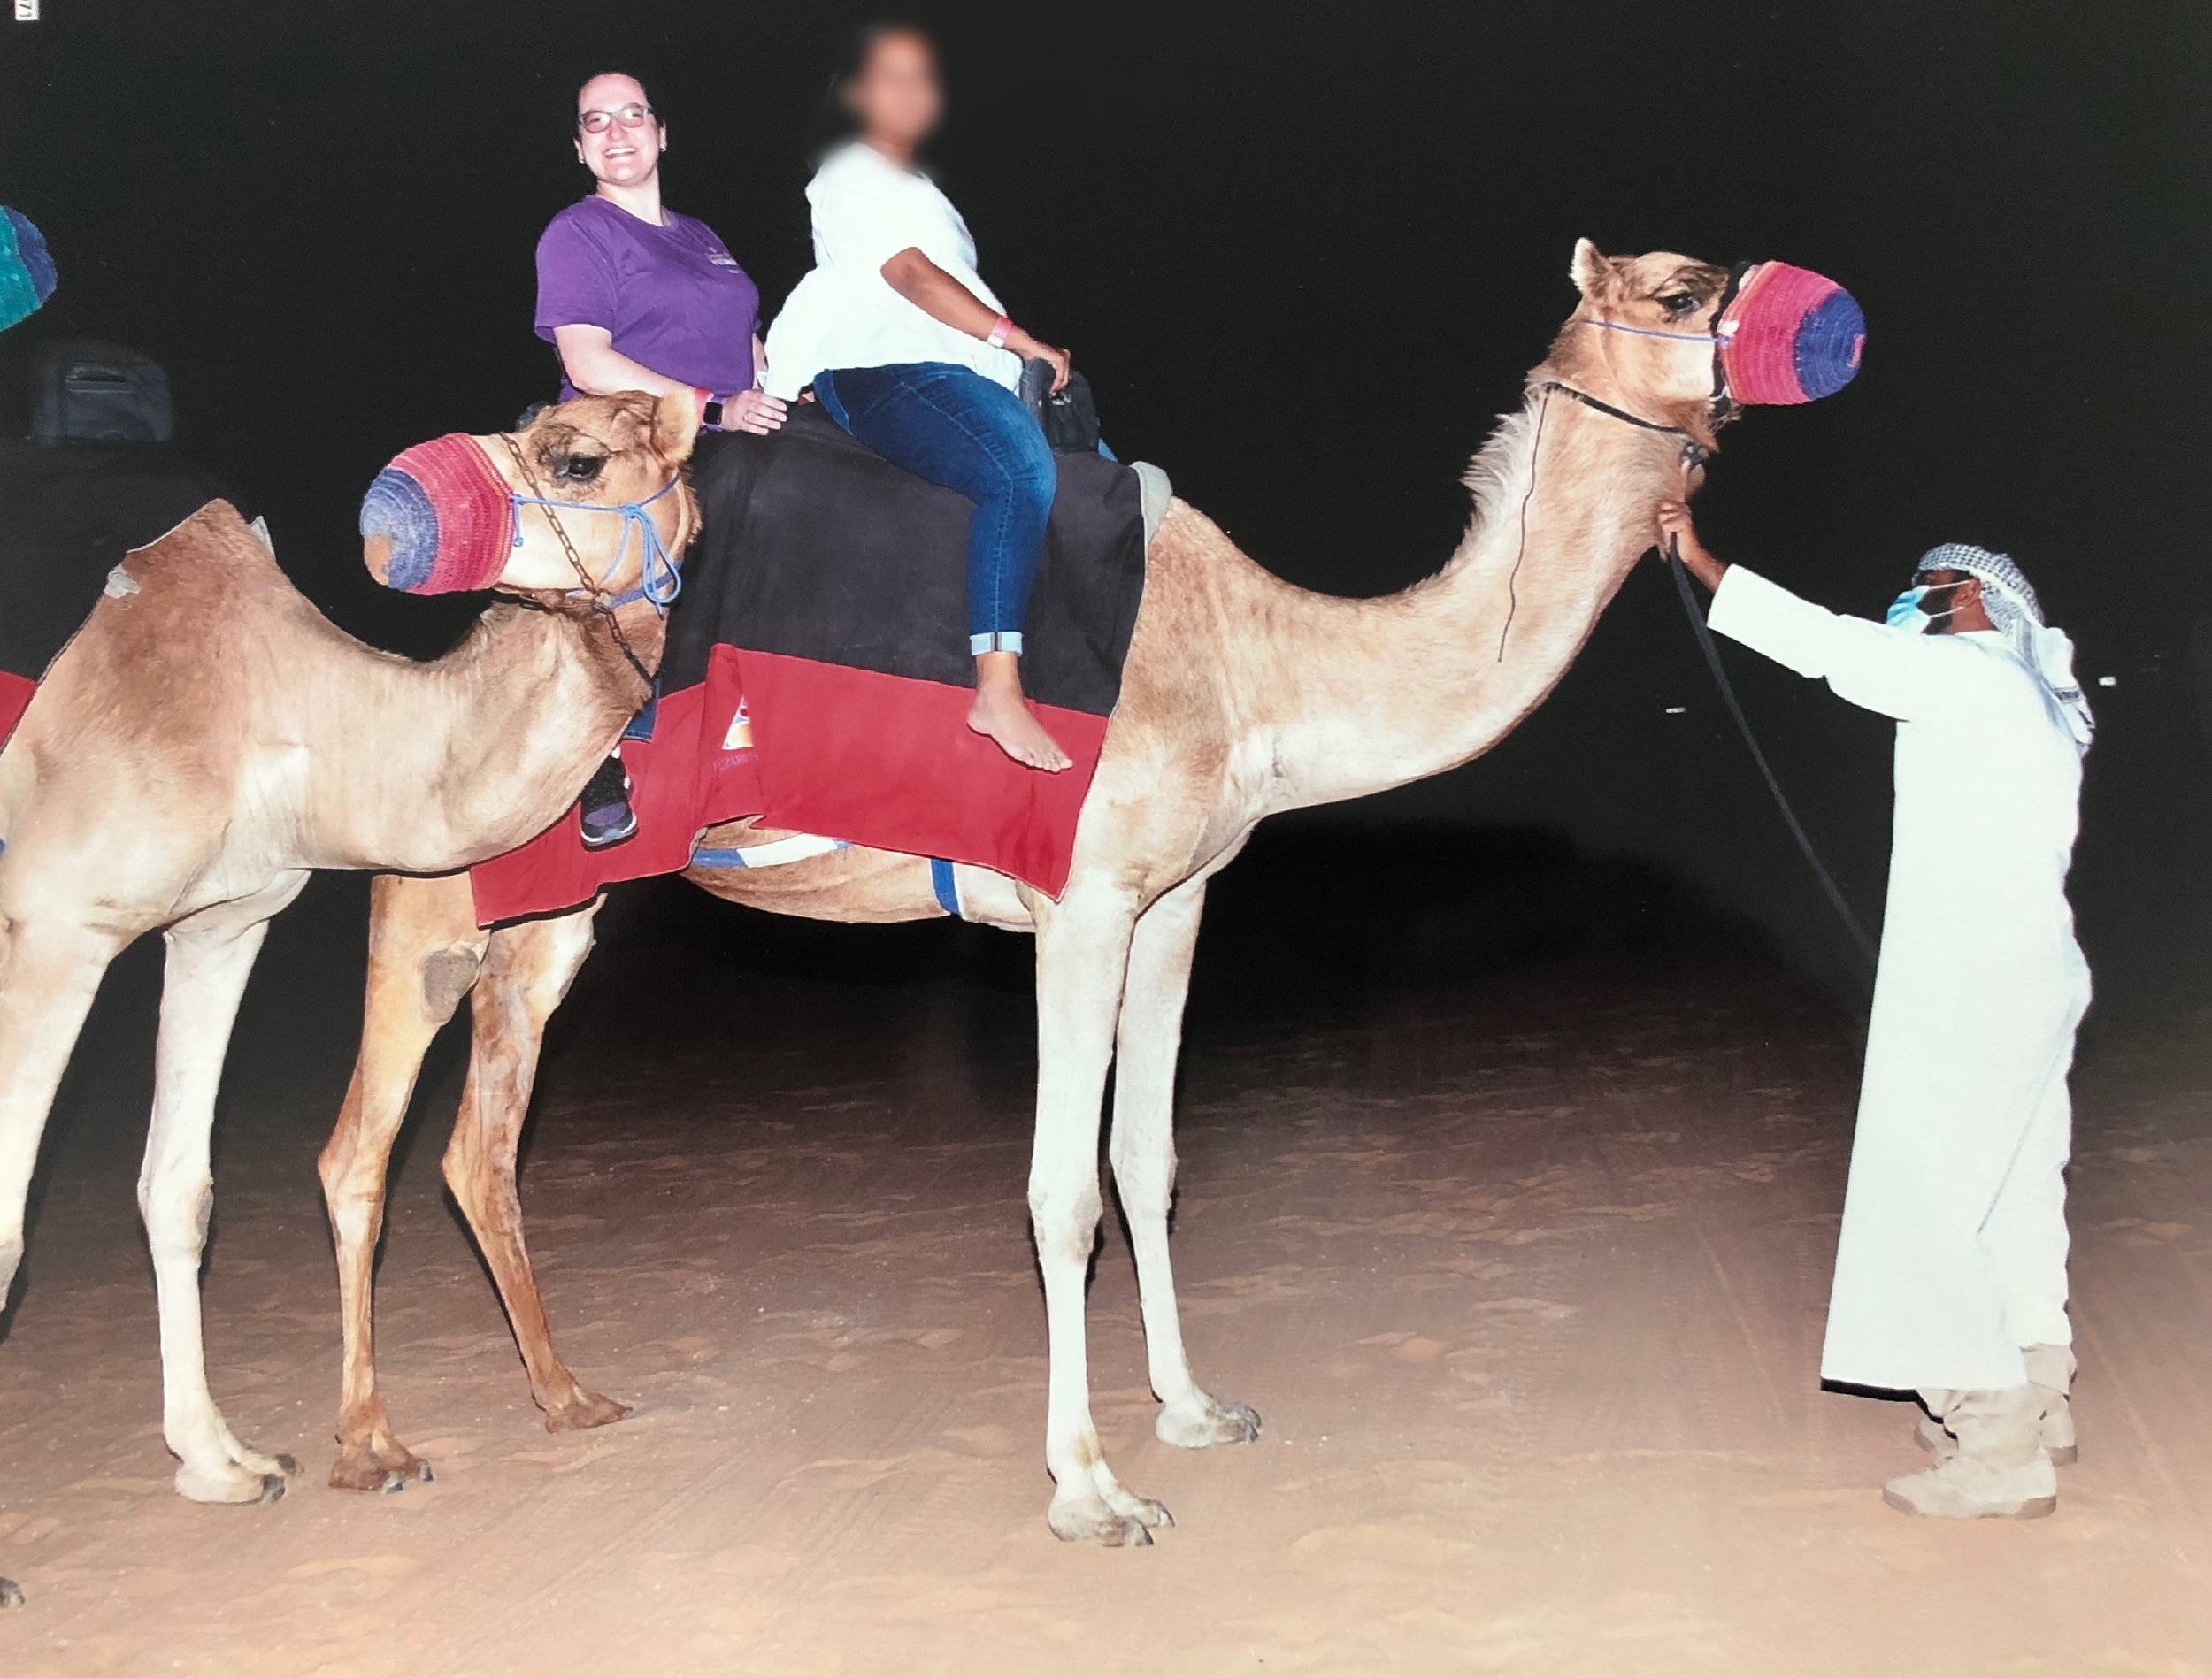 CamelRiding_Dubai.JPG